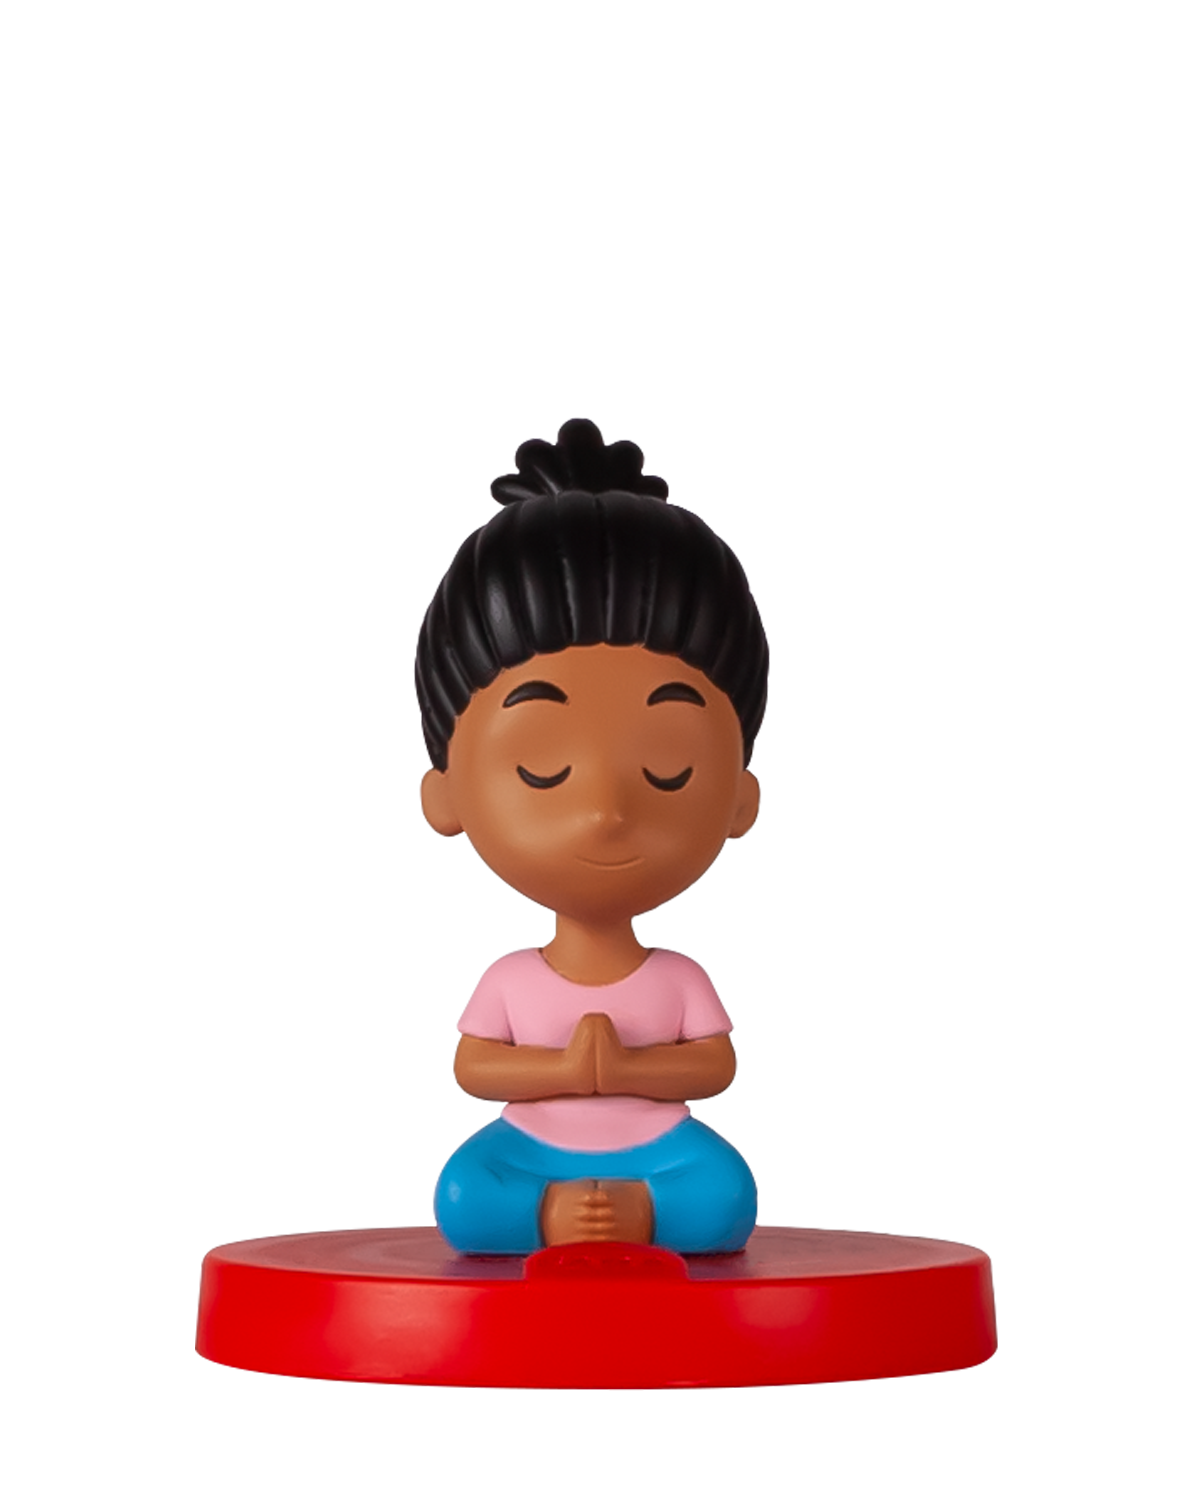 Personaggio sonoro - faba - baby yoga - età 4+ anni - FABA